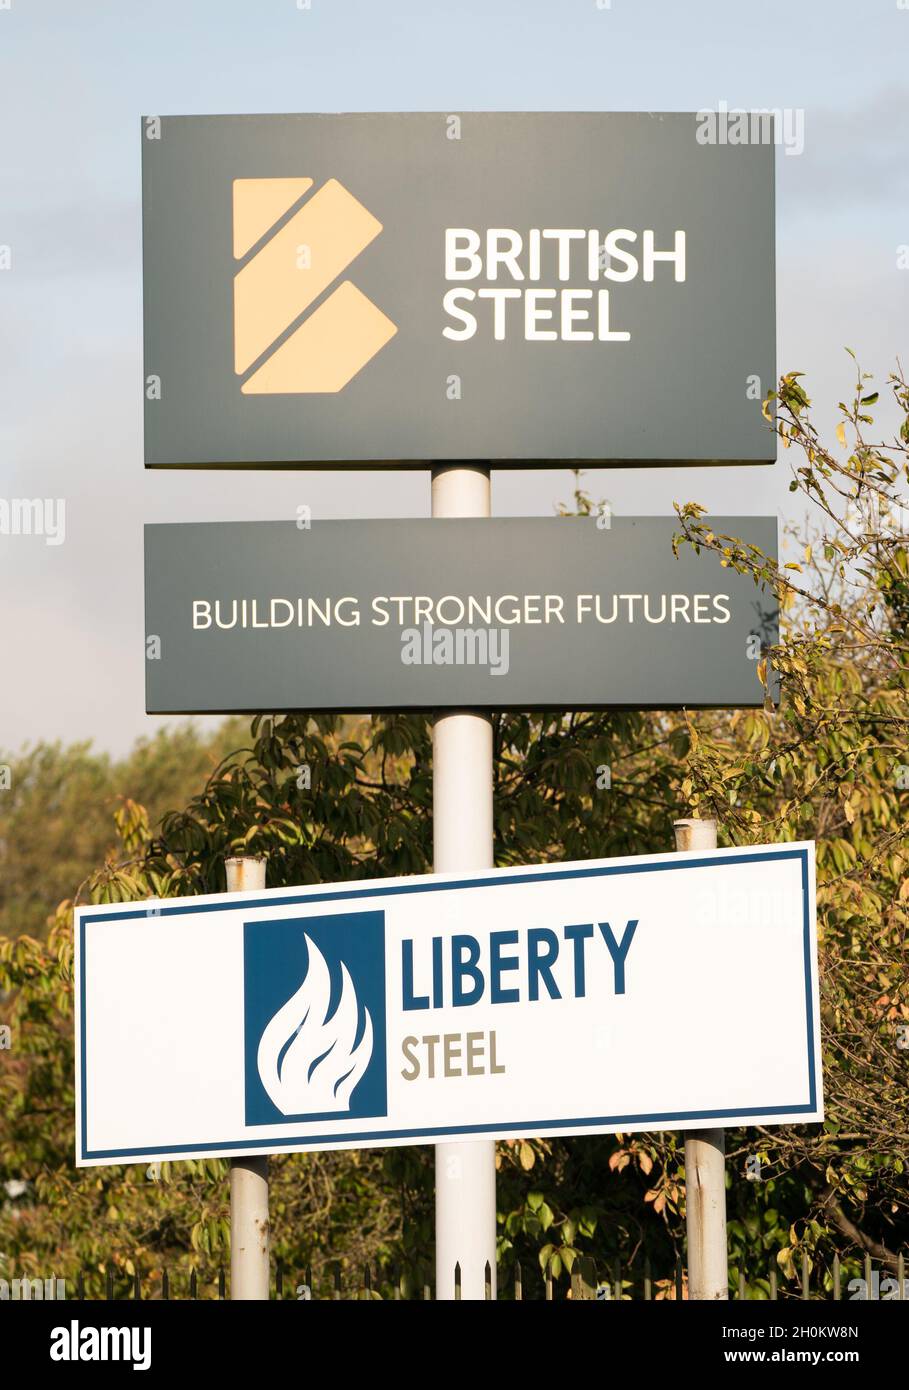 British Steel und Liberty Steel signiert beim Stahlwerk von British Steel Ltd in Scunthorpe, North Lincolnshire. Ein vom Steuerzahler unterstütztes Unterstützungspaket für energieintensive Unternehmen, die von dem Anstieg der Gaspreise betroffen sind, kann nicht mehr sein als ein „fadenhaftender Pflaster“, haben Branchenführer gewarnt. Man geht davon aus, dass das Gesamtpaket Hunderte Millionen Pfund betragen könnte, wobei Branchen wie Keramik und Papier sowie die Stahlherstellung wahrscheinlich Unterstützung suchen werden. Bilddatum: Mittwoch, 13. Oktober 2021. Stockfoto